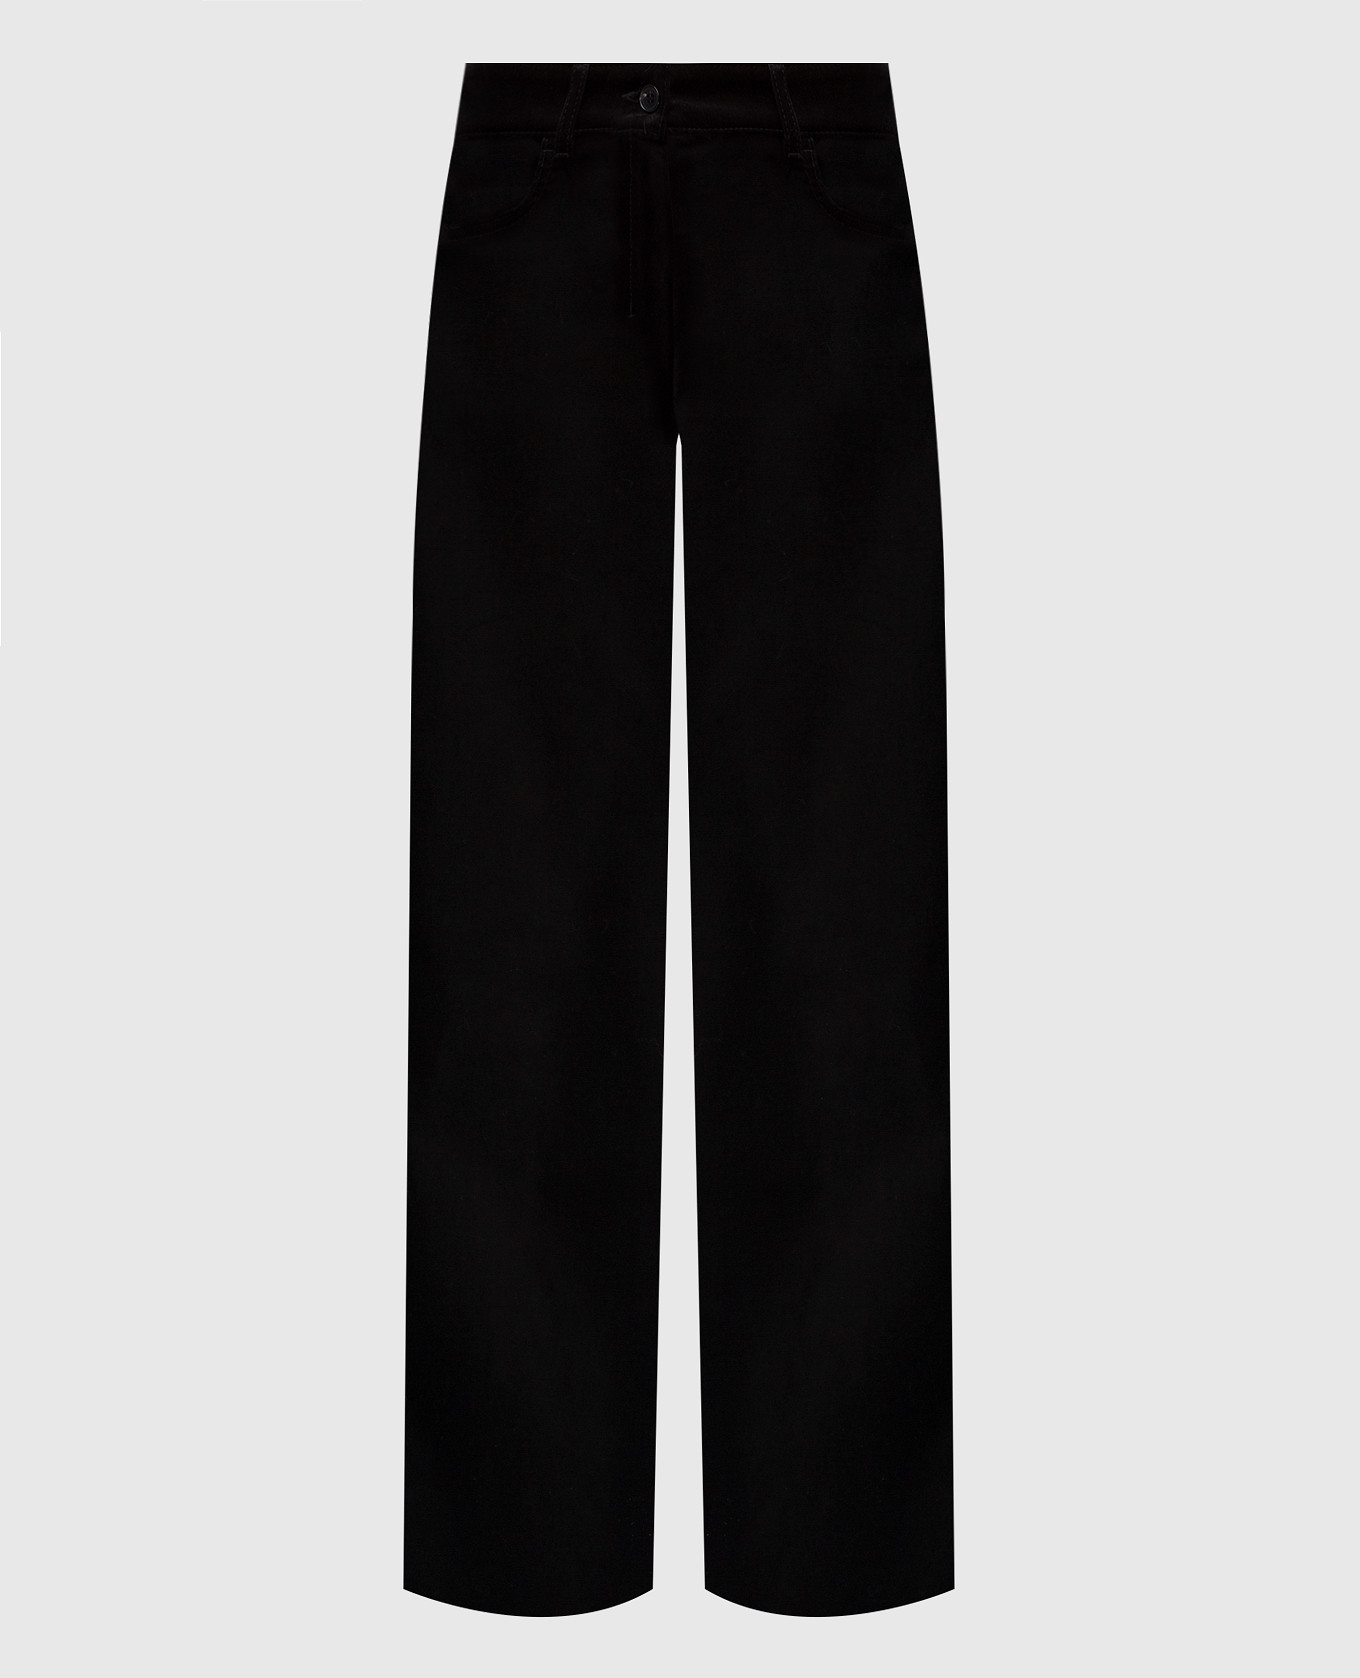 Черные укороченные брюки Parsec из бархата